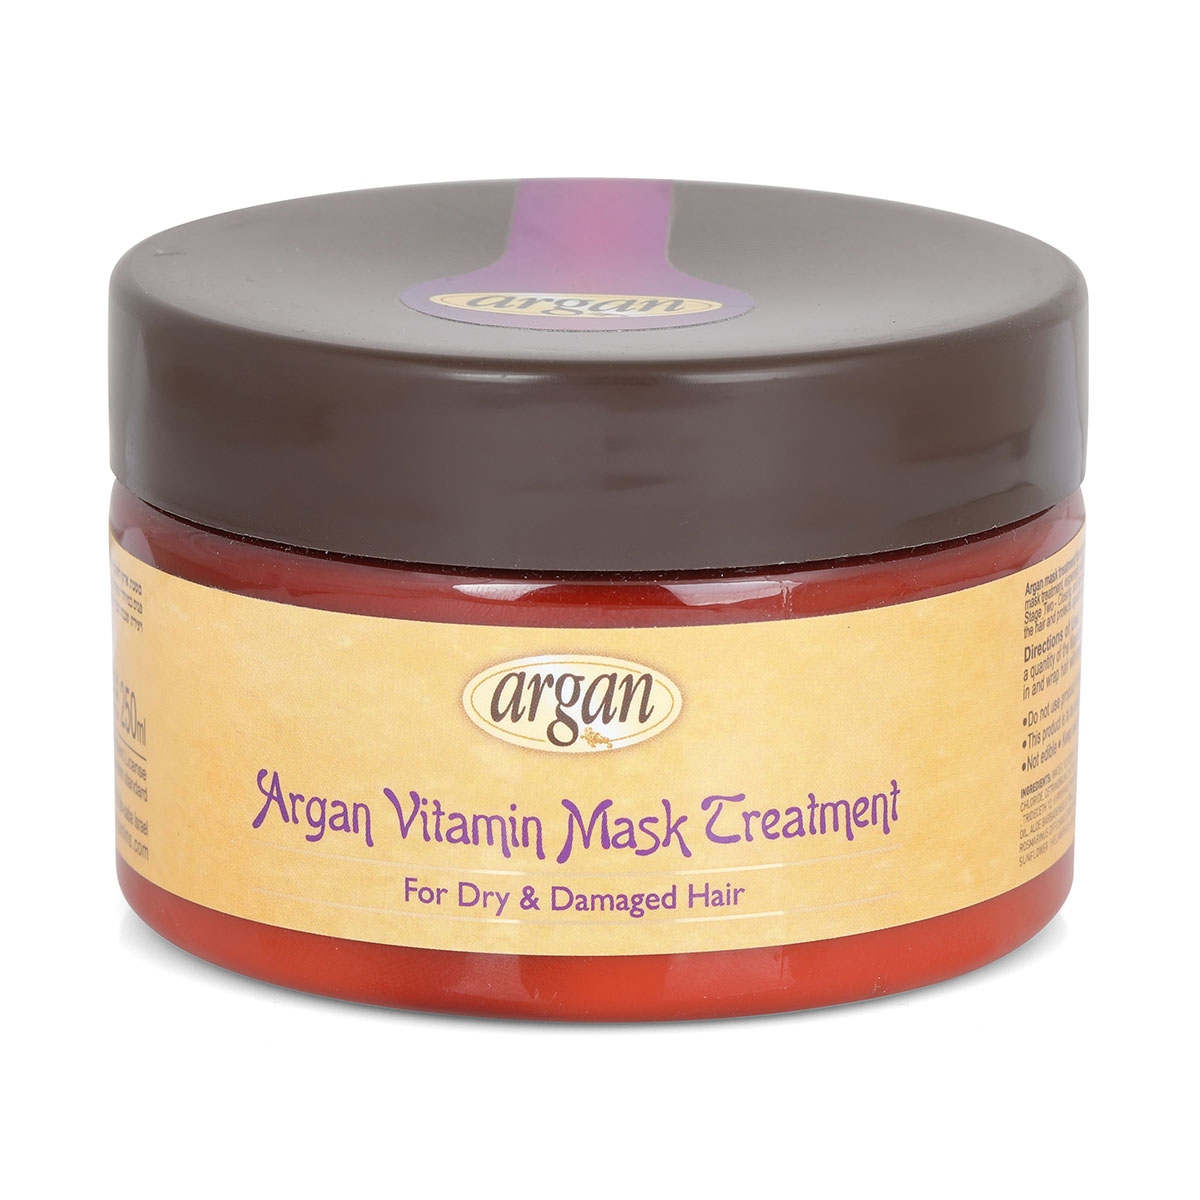  Natural Moroccan Argan Vitamin Mask Treatment: Dry & Damaged Hair - 1